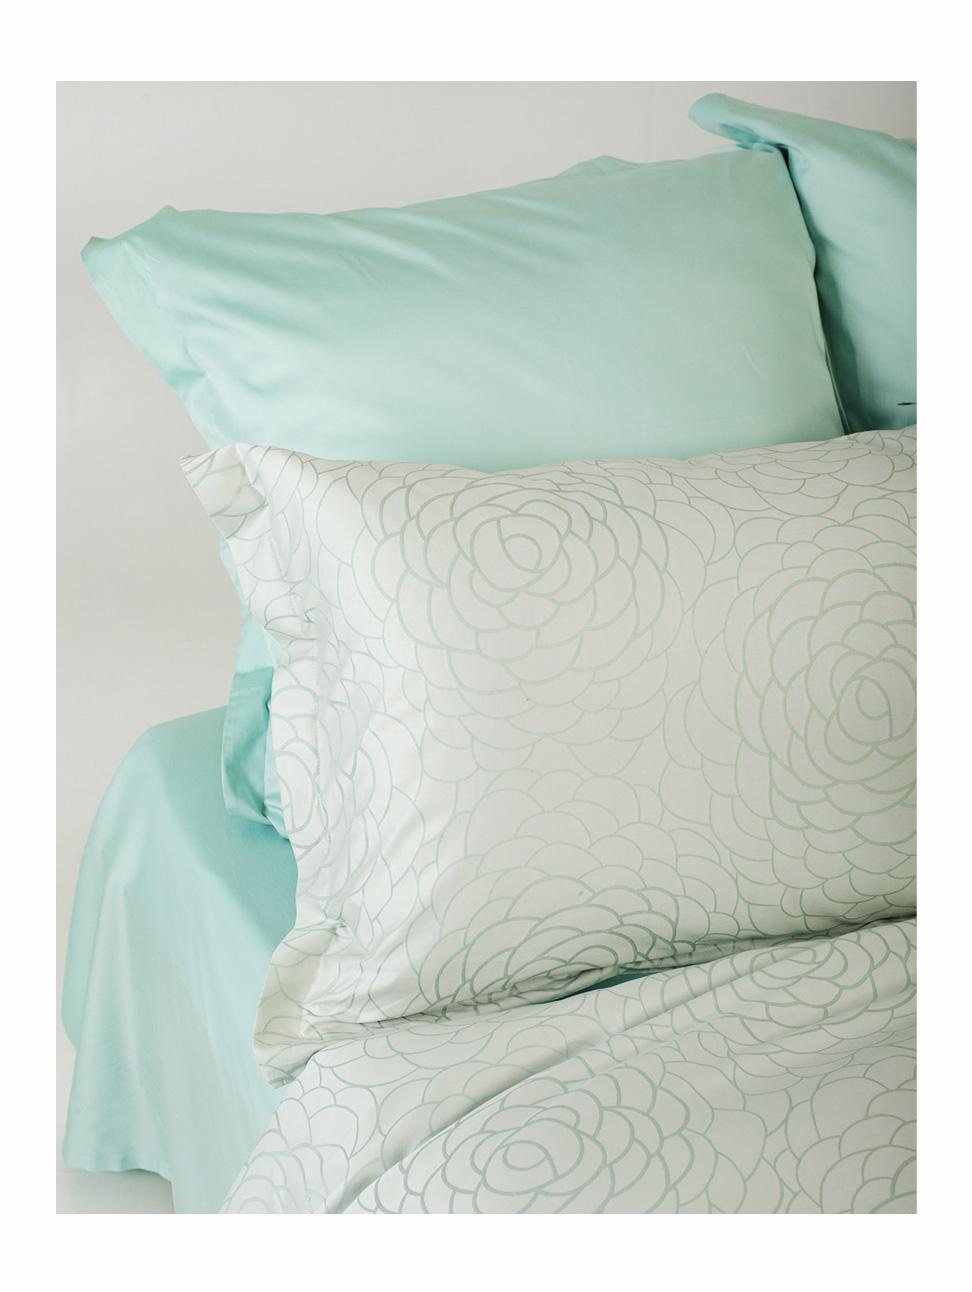 Комплект постельного белья Евро комплект Classic Tiffany rose